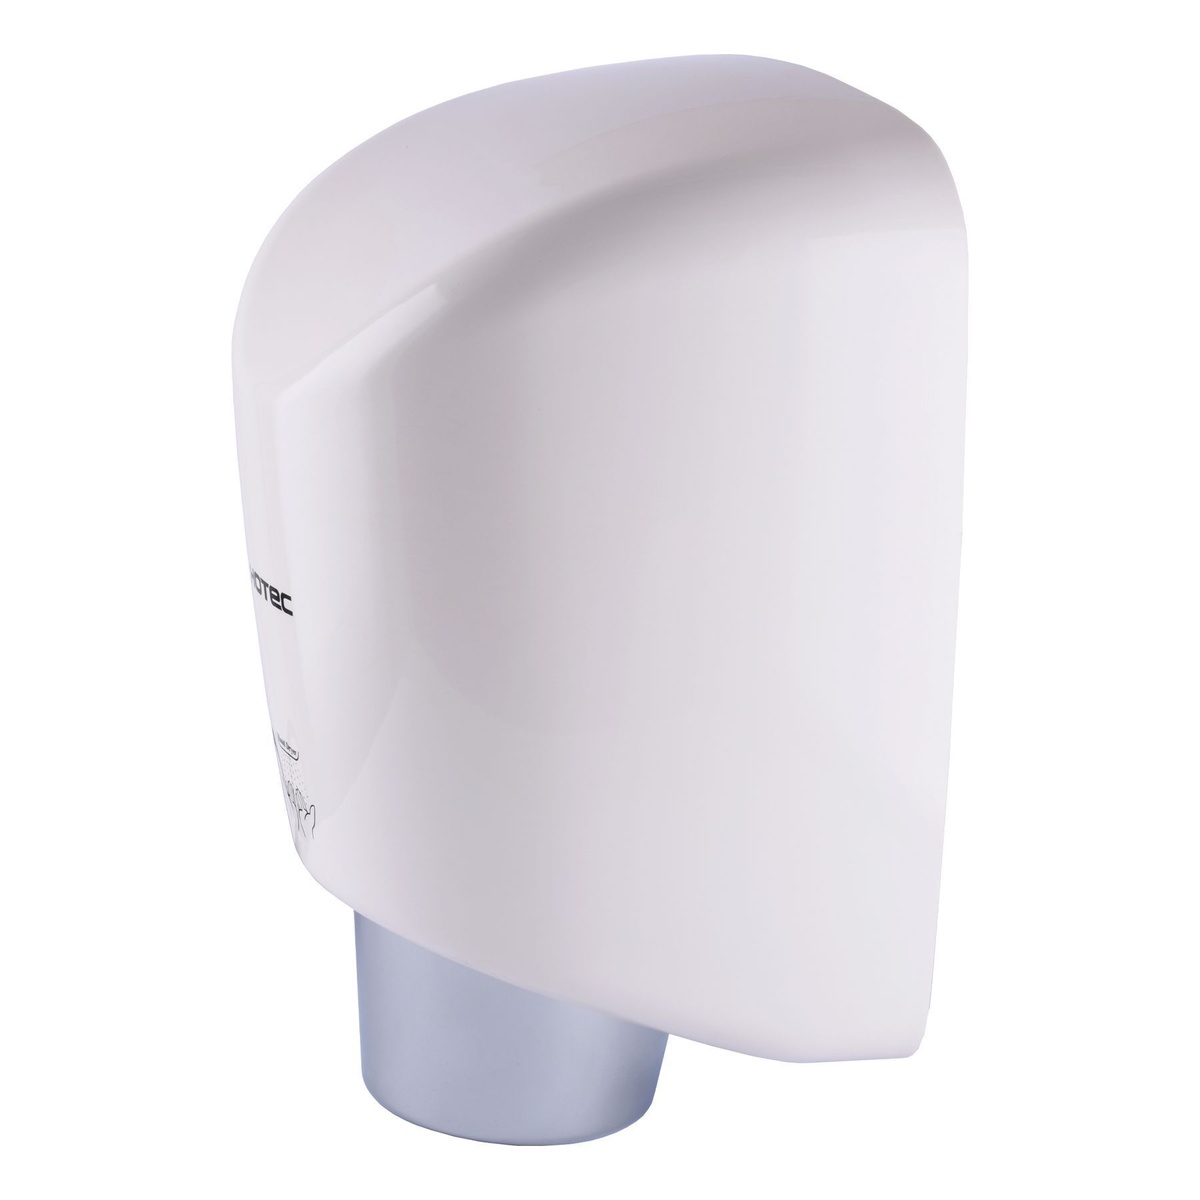 Электросушилка для рук настенная сенсорная HOTEC 11.251 ABS White 000019605 на 1800Вт 221x190x320мм пластиковая белая